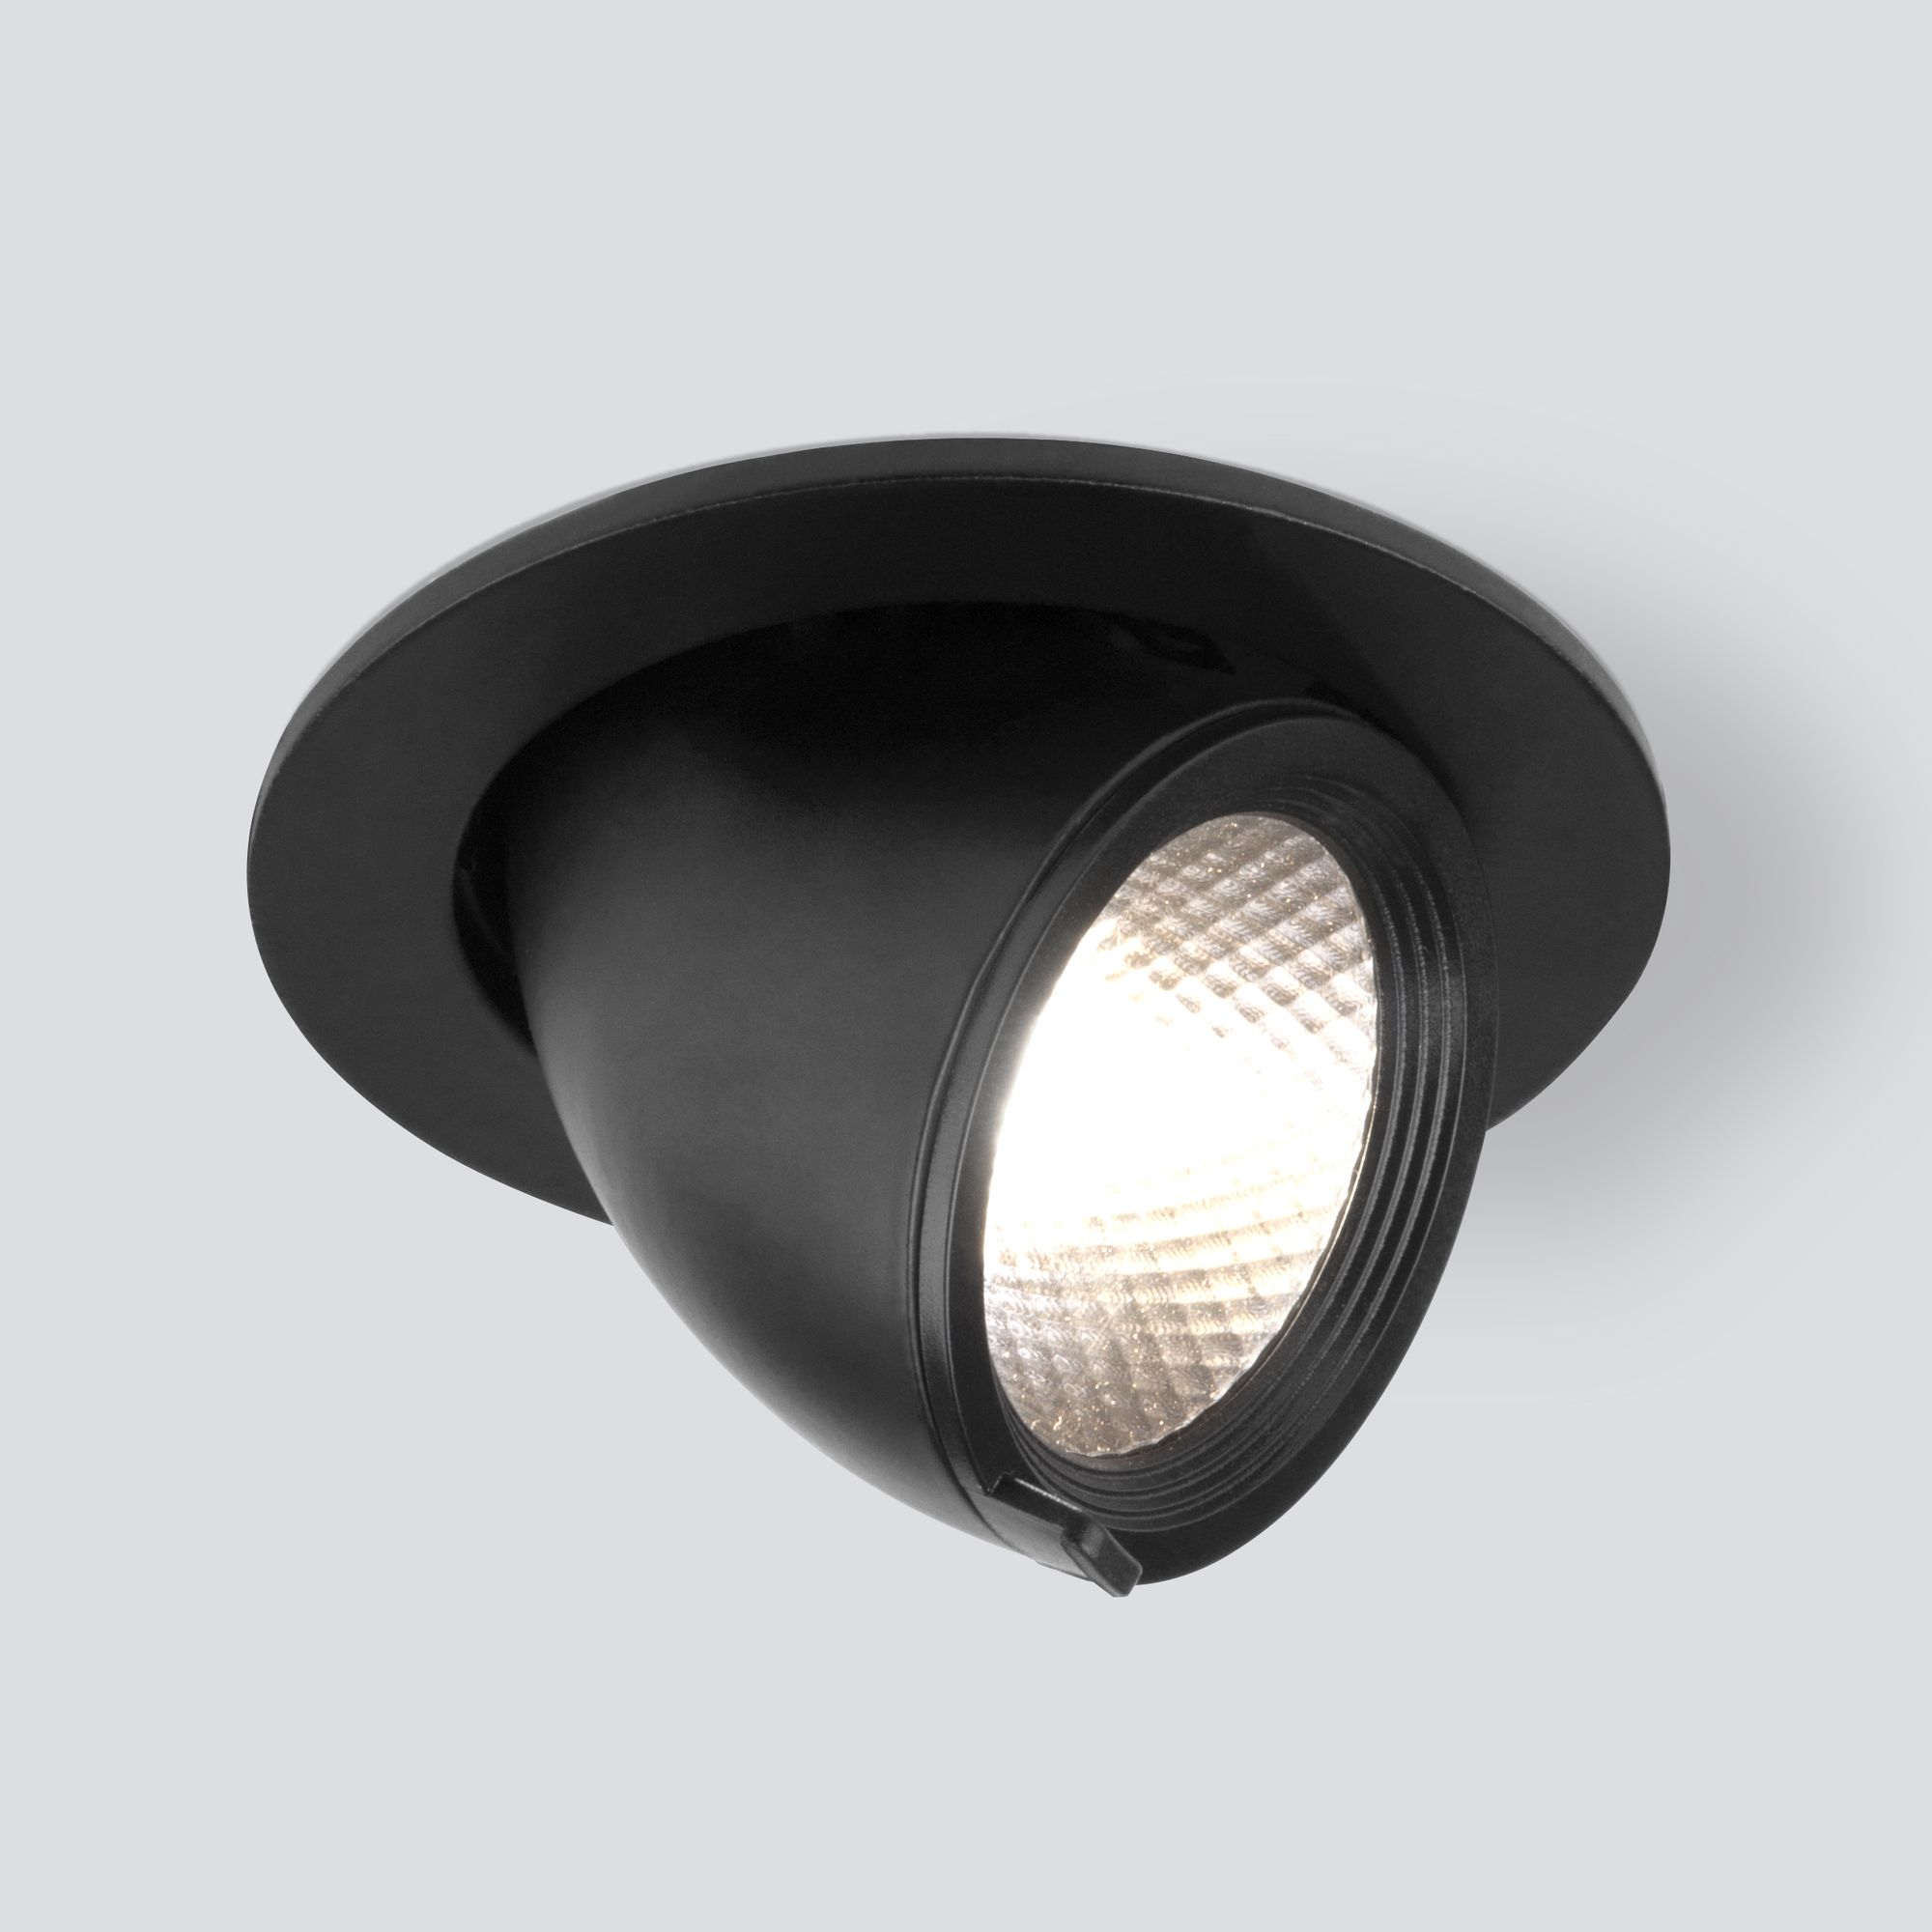 Встраиваемый точечный светодиодный светильник 9918 LED 9W 4200K черный Elektrostandard